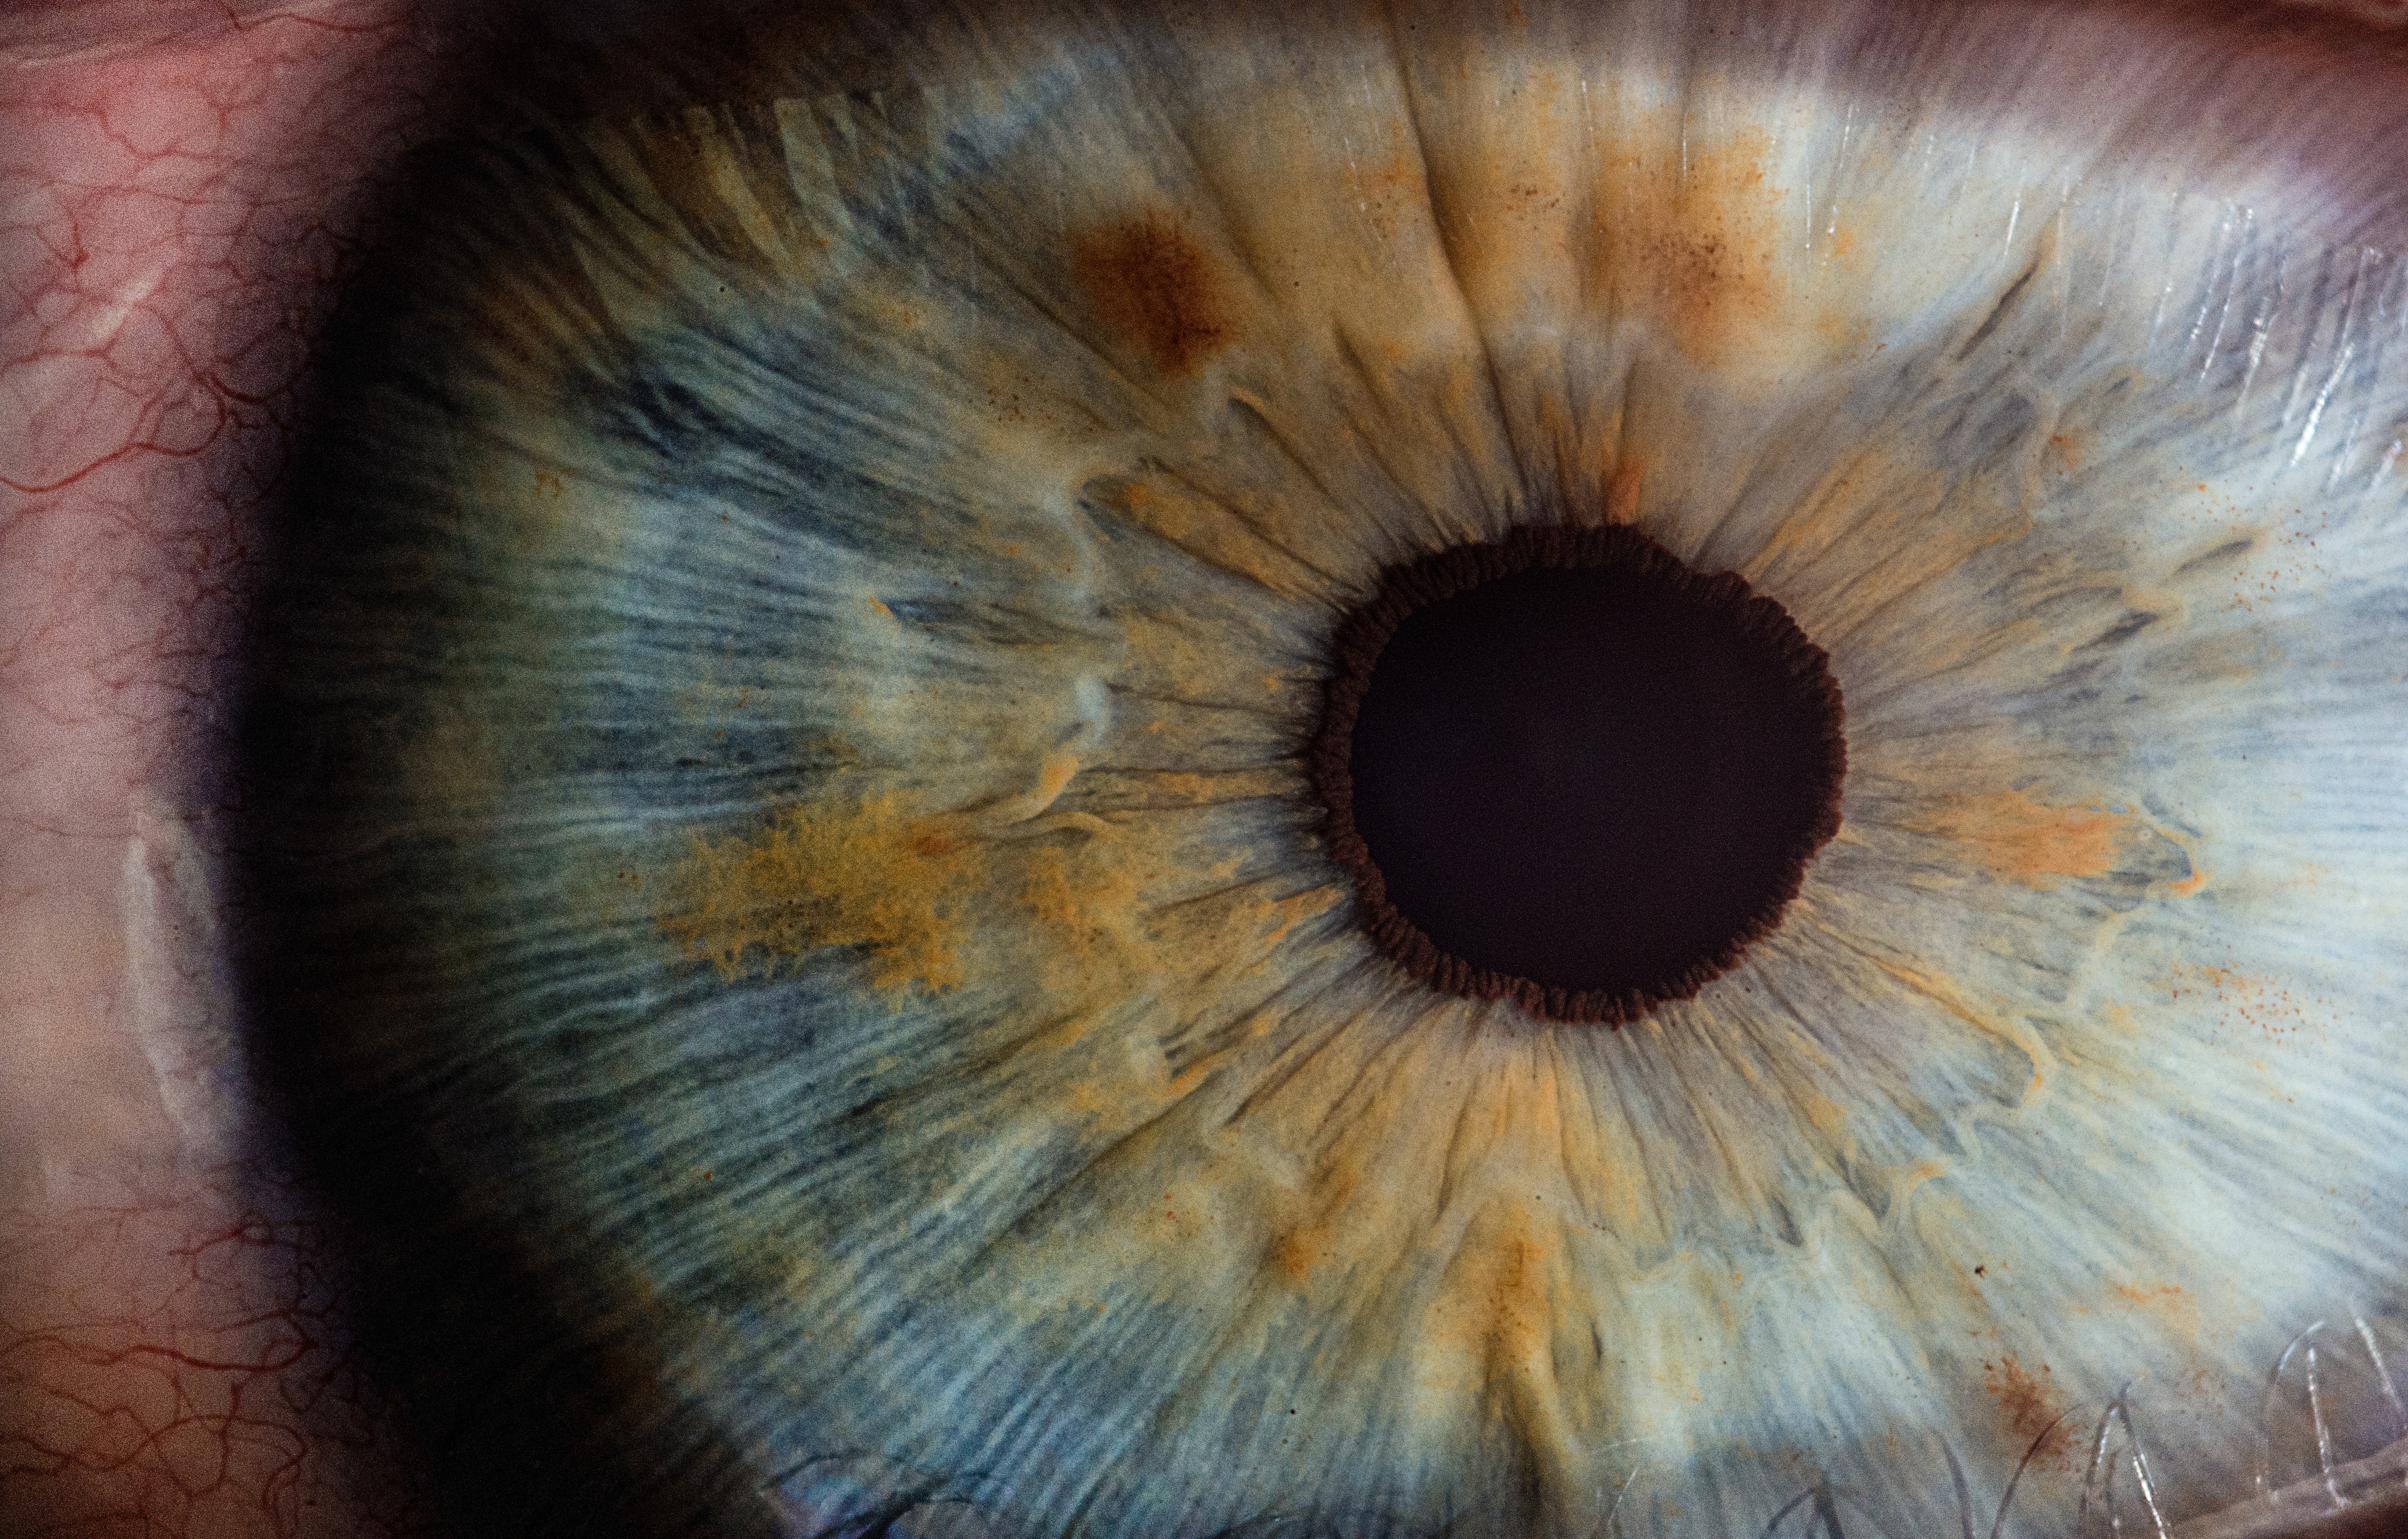 Premieră mondială: transplantul unui ochi complet, realizat în SUA